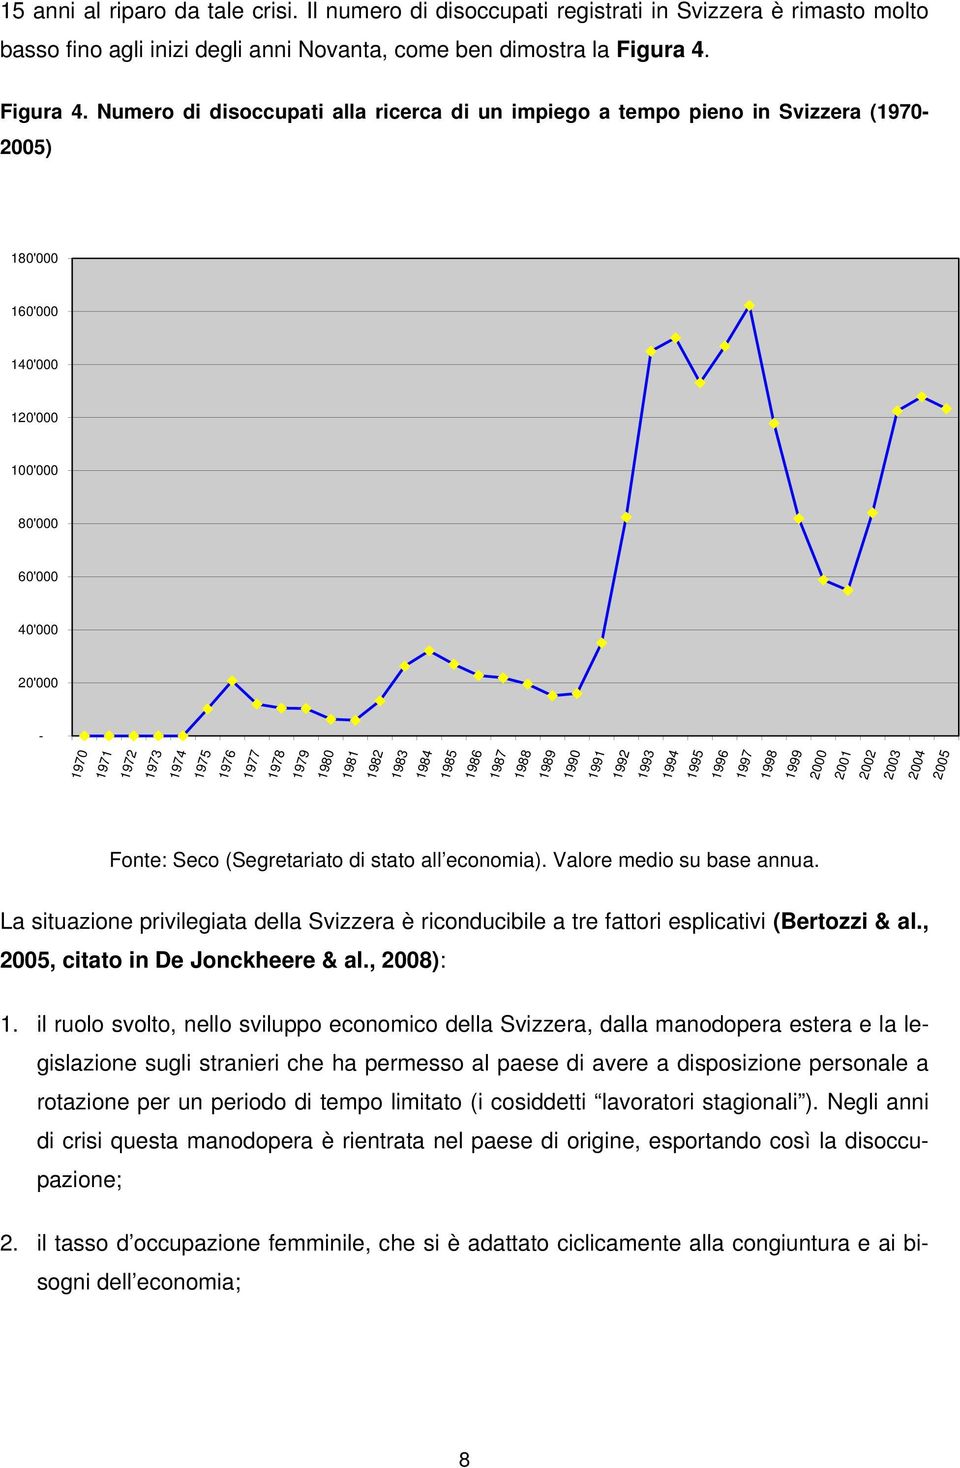 Numero di disoccupati alla ricerca di un impiego a tempo pieno in Svizzera (1970-2005) 180'000 160'000 140'000 120'000 100'000 80'000 60'000 40'000 20'000-1970 1971 1972 1973 1974 1975 1976 1977 1978